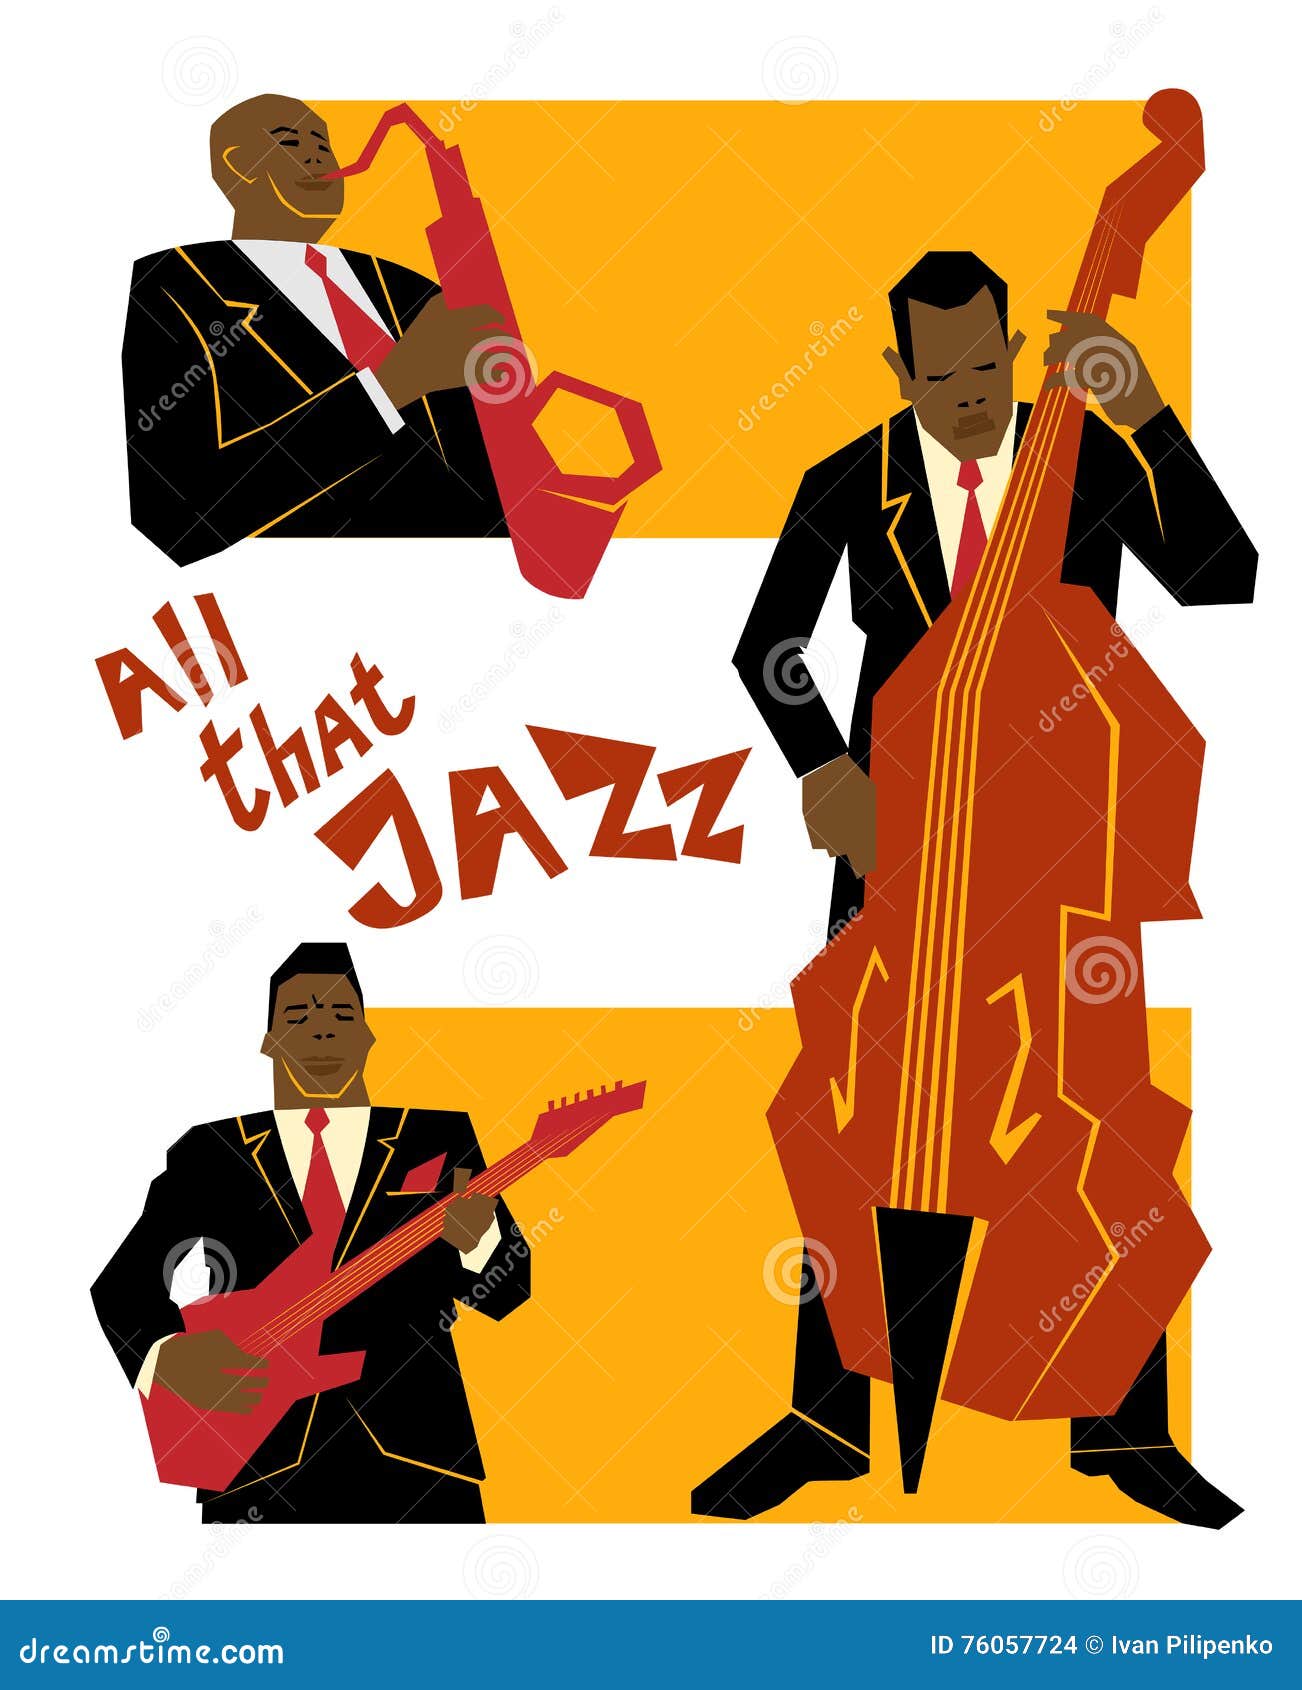 The Old school jazz – back in da days –